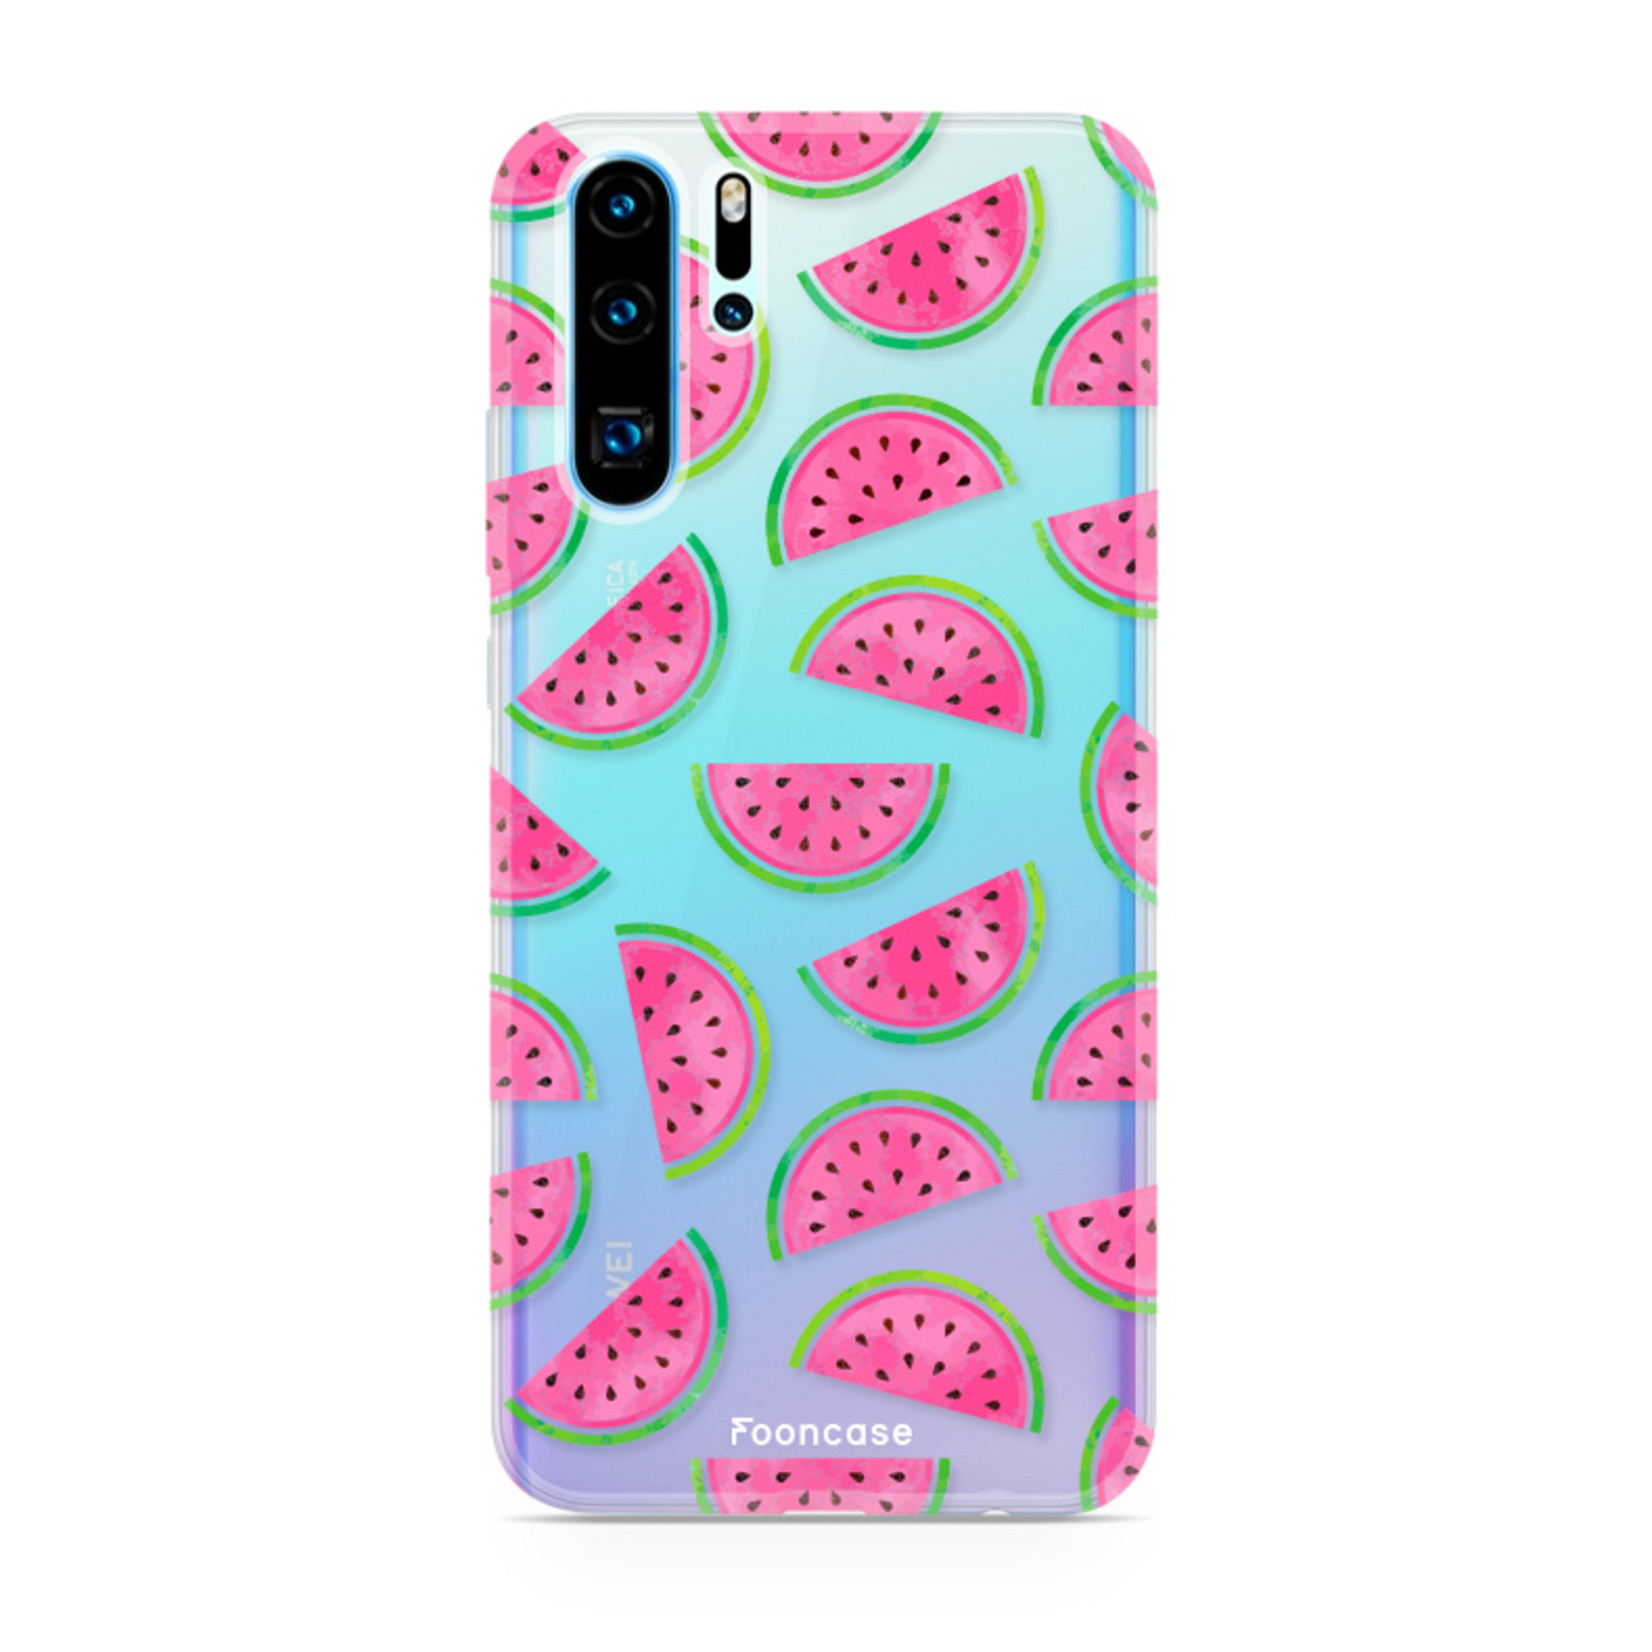 FOONCASE Huawei P30 Pro Handyh√ºlle - Wassermelone